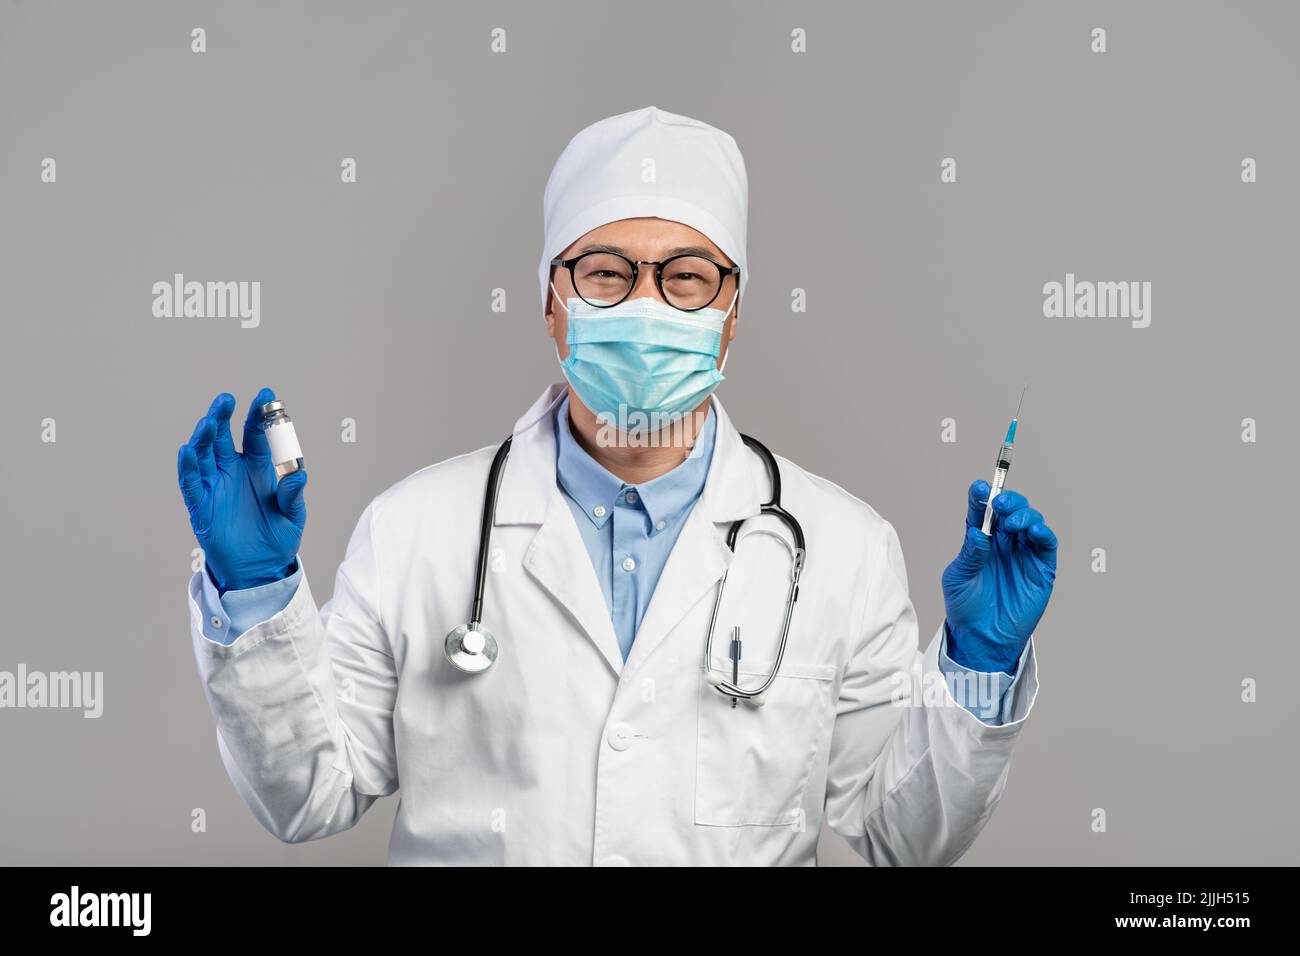 Gai mature médecin chinois en manteau blanc, verres et gants montre le vaccin et la seringue Banque D'Images